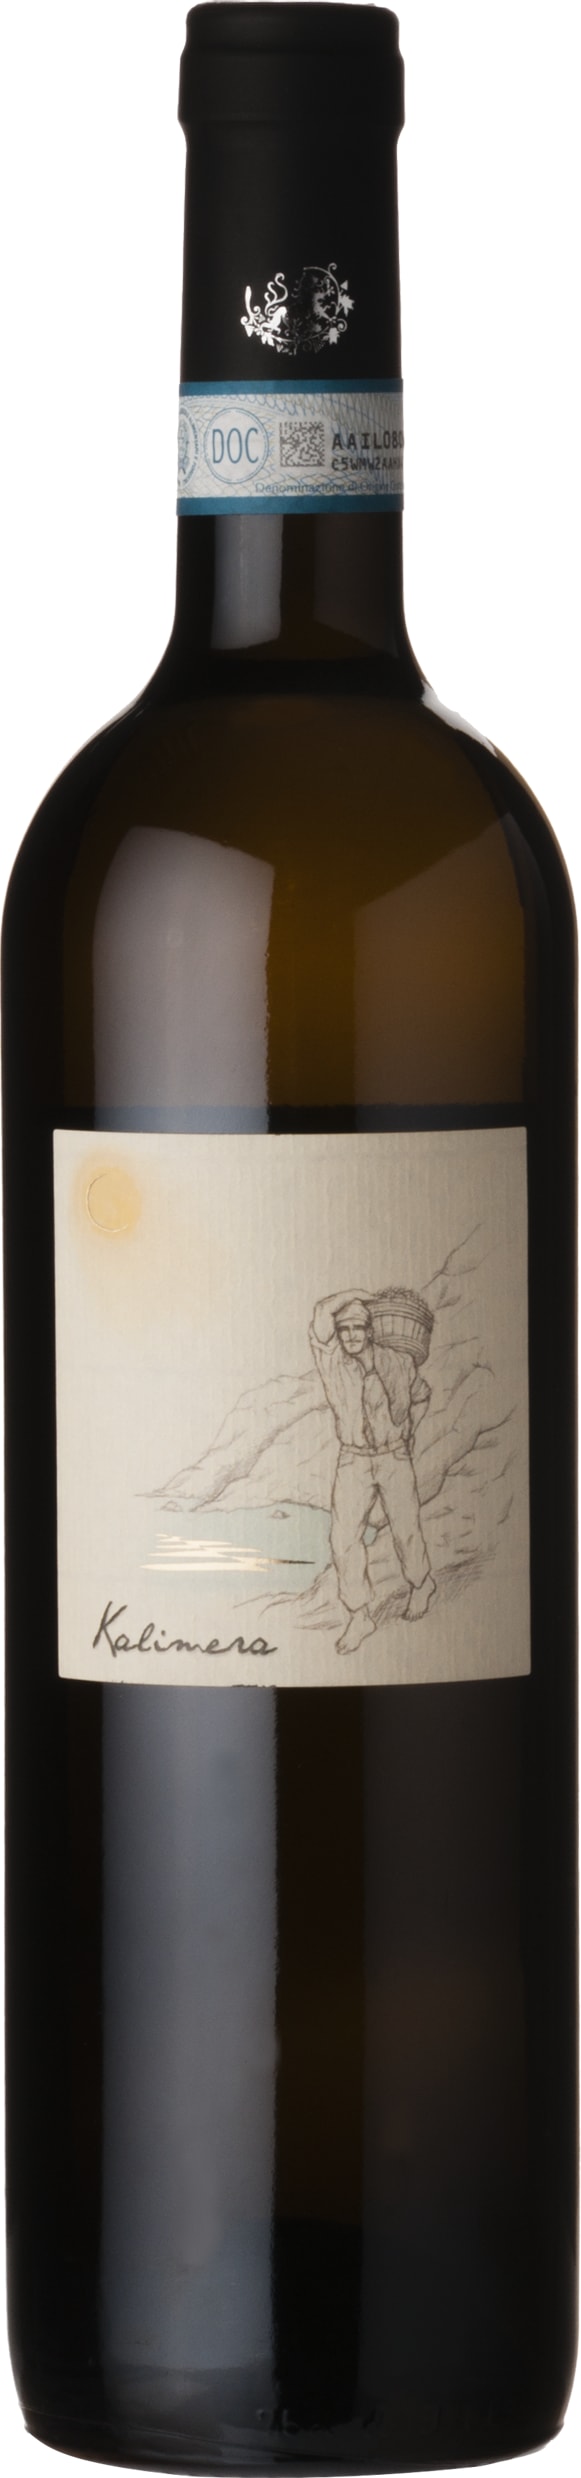 Cenatiempo Kalimera Biancolella Ischia DOC 2020 6x75cl - Just Wines 